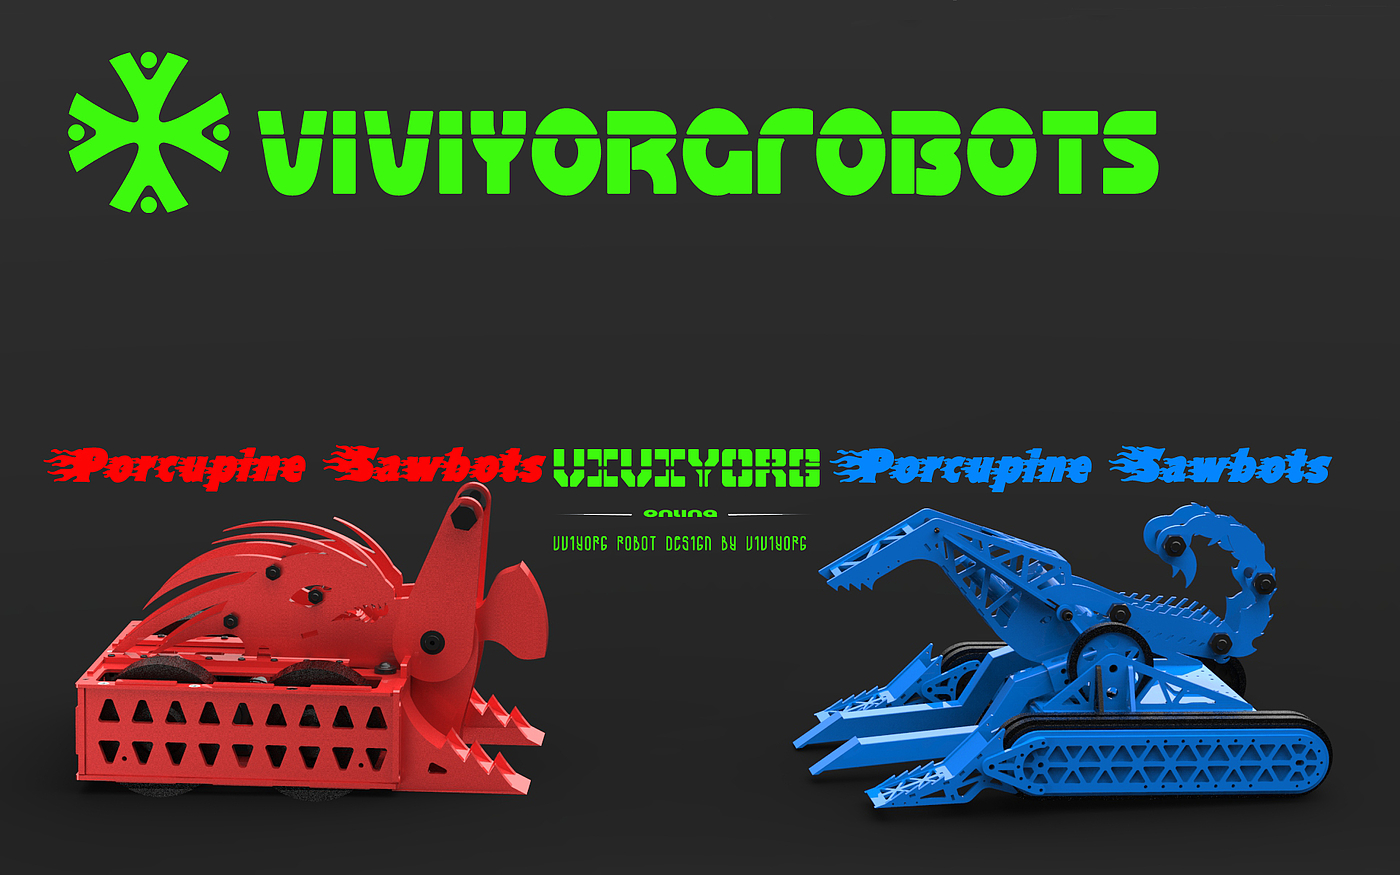 格斗机器人，Robot Wars，RobotGames，对战机器人，AGV赛车，RoboMasters，BattleBots，